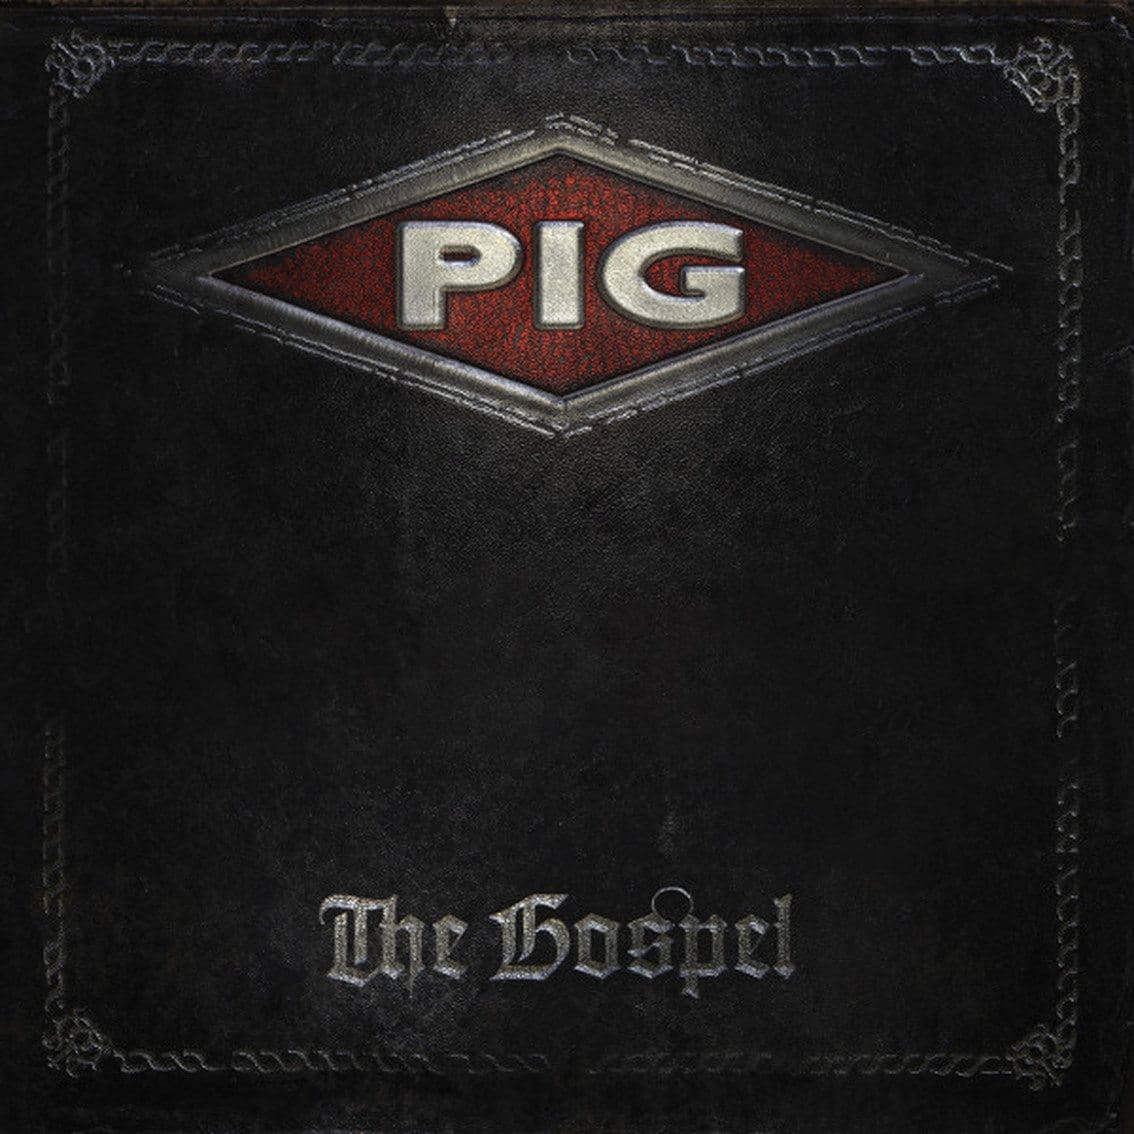 PIG returns! 'The Gospel' gets a 2LP vinyl/CD treatment!